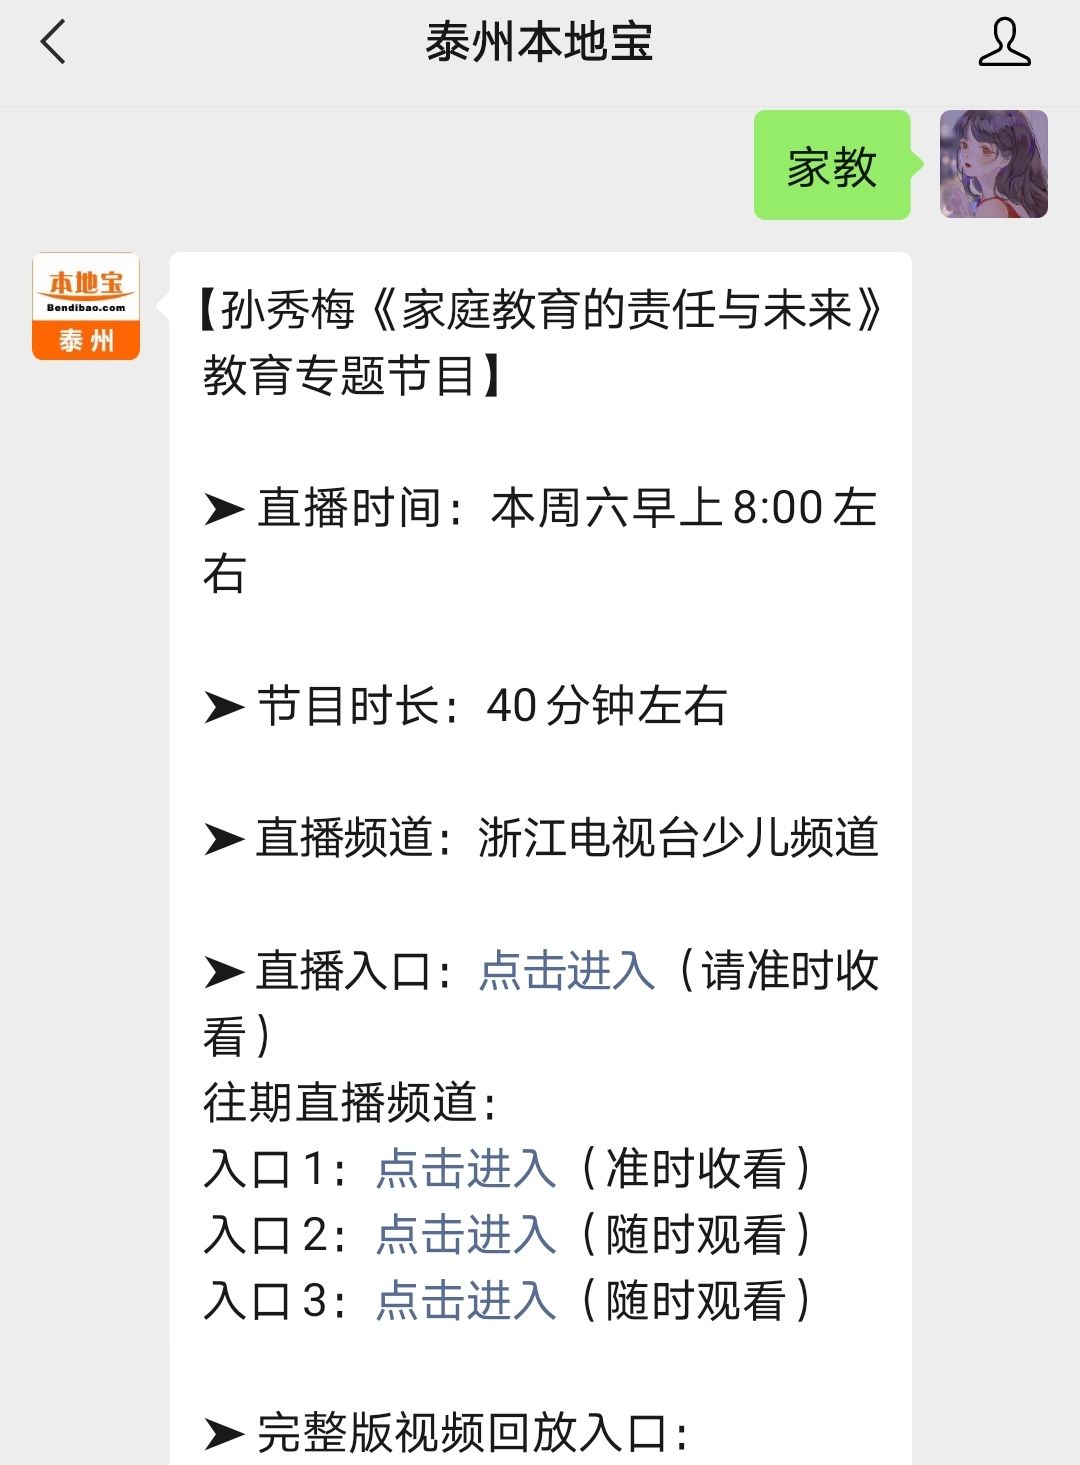 中国教育电视台1频道(cetv1)，中国教育电视台1频道CETV16月27？